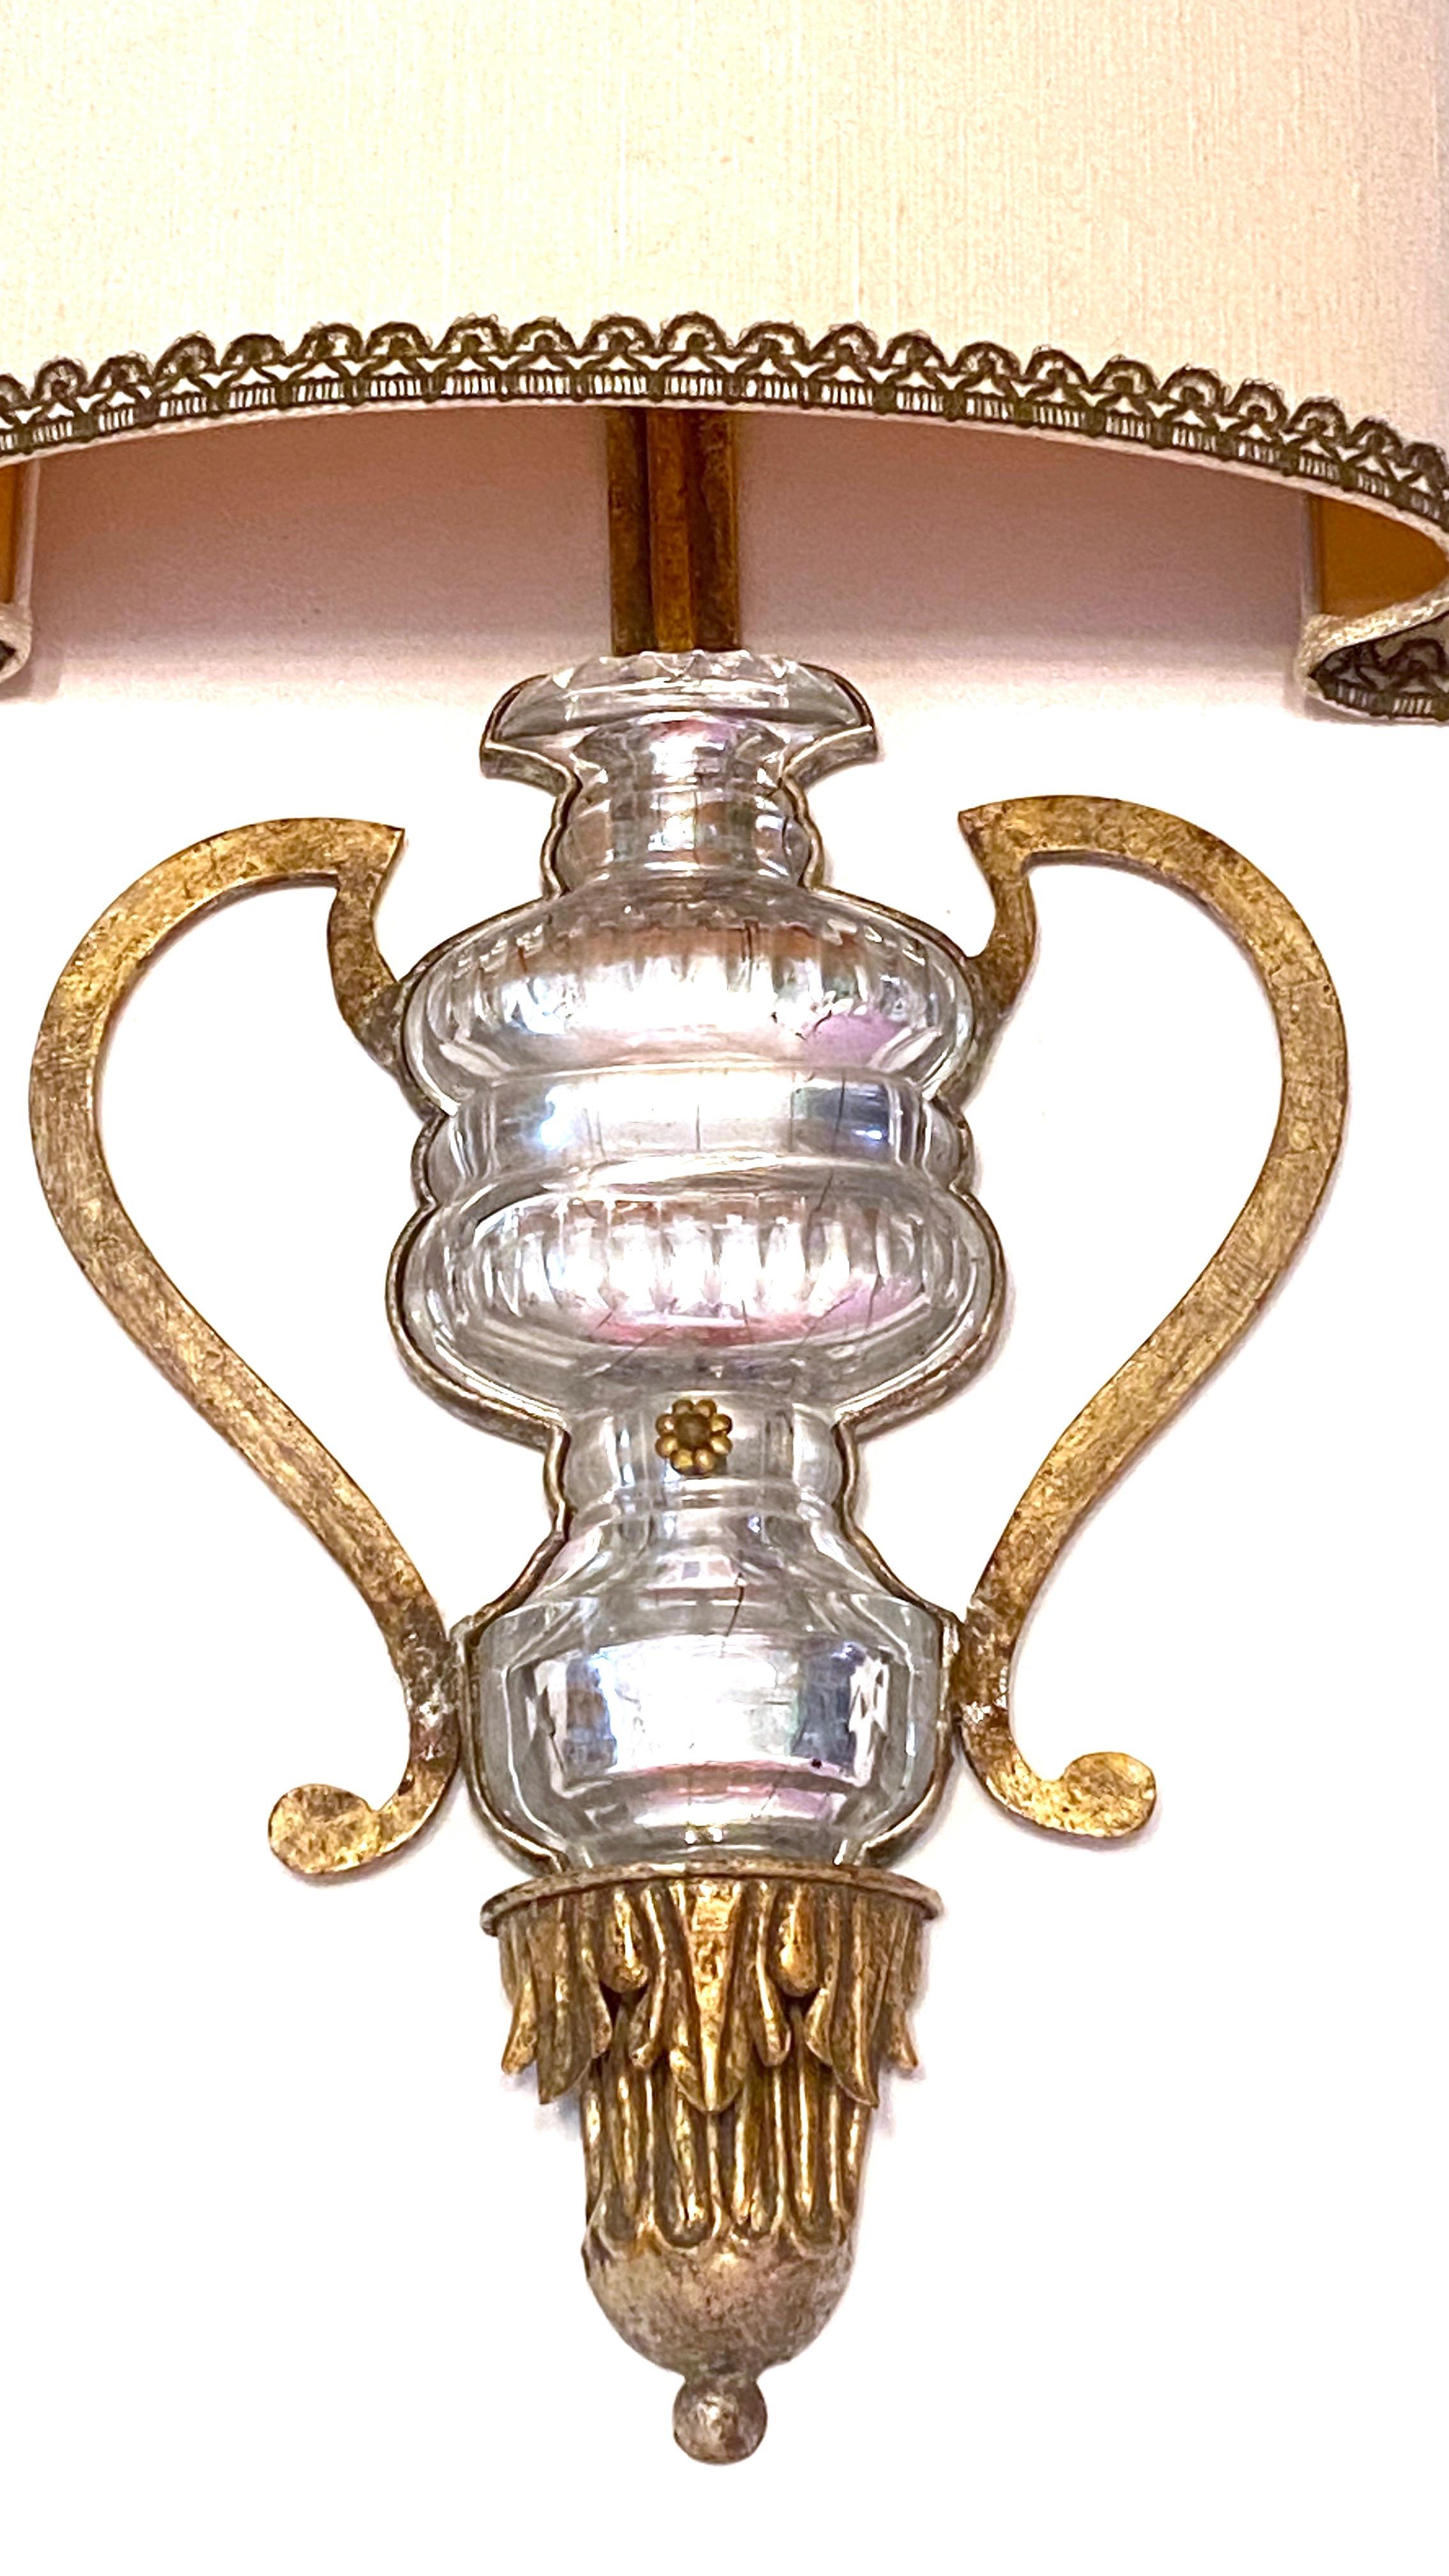 Une seule grande applique de Banci Firenze avec un motif d'urne en cristal. Le luminaire nécessite deux ampoules européennes E14 de type candélabre, chaque ampoule pouvant atteindre 60 watts. L'applique a une belle patine et donne à chaque pièce un